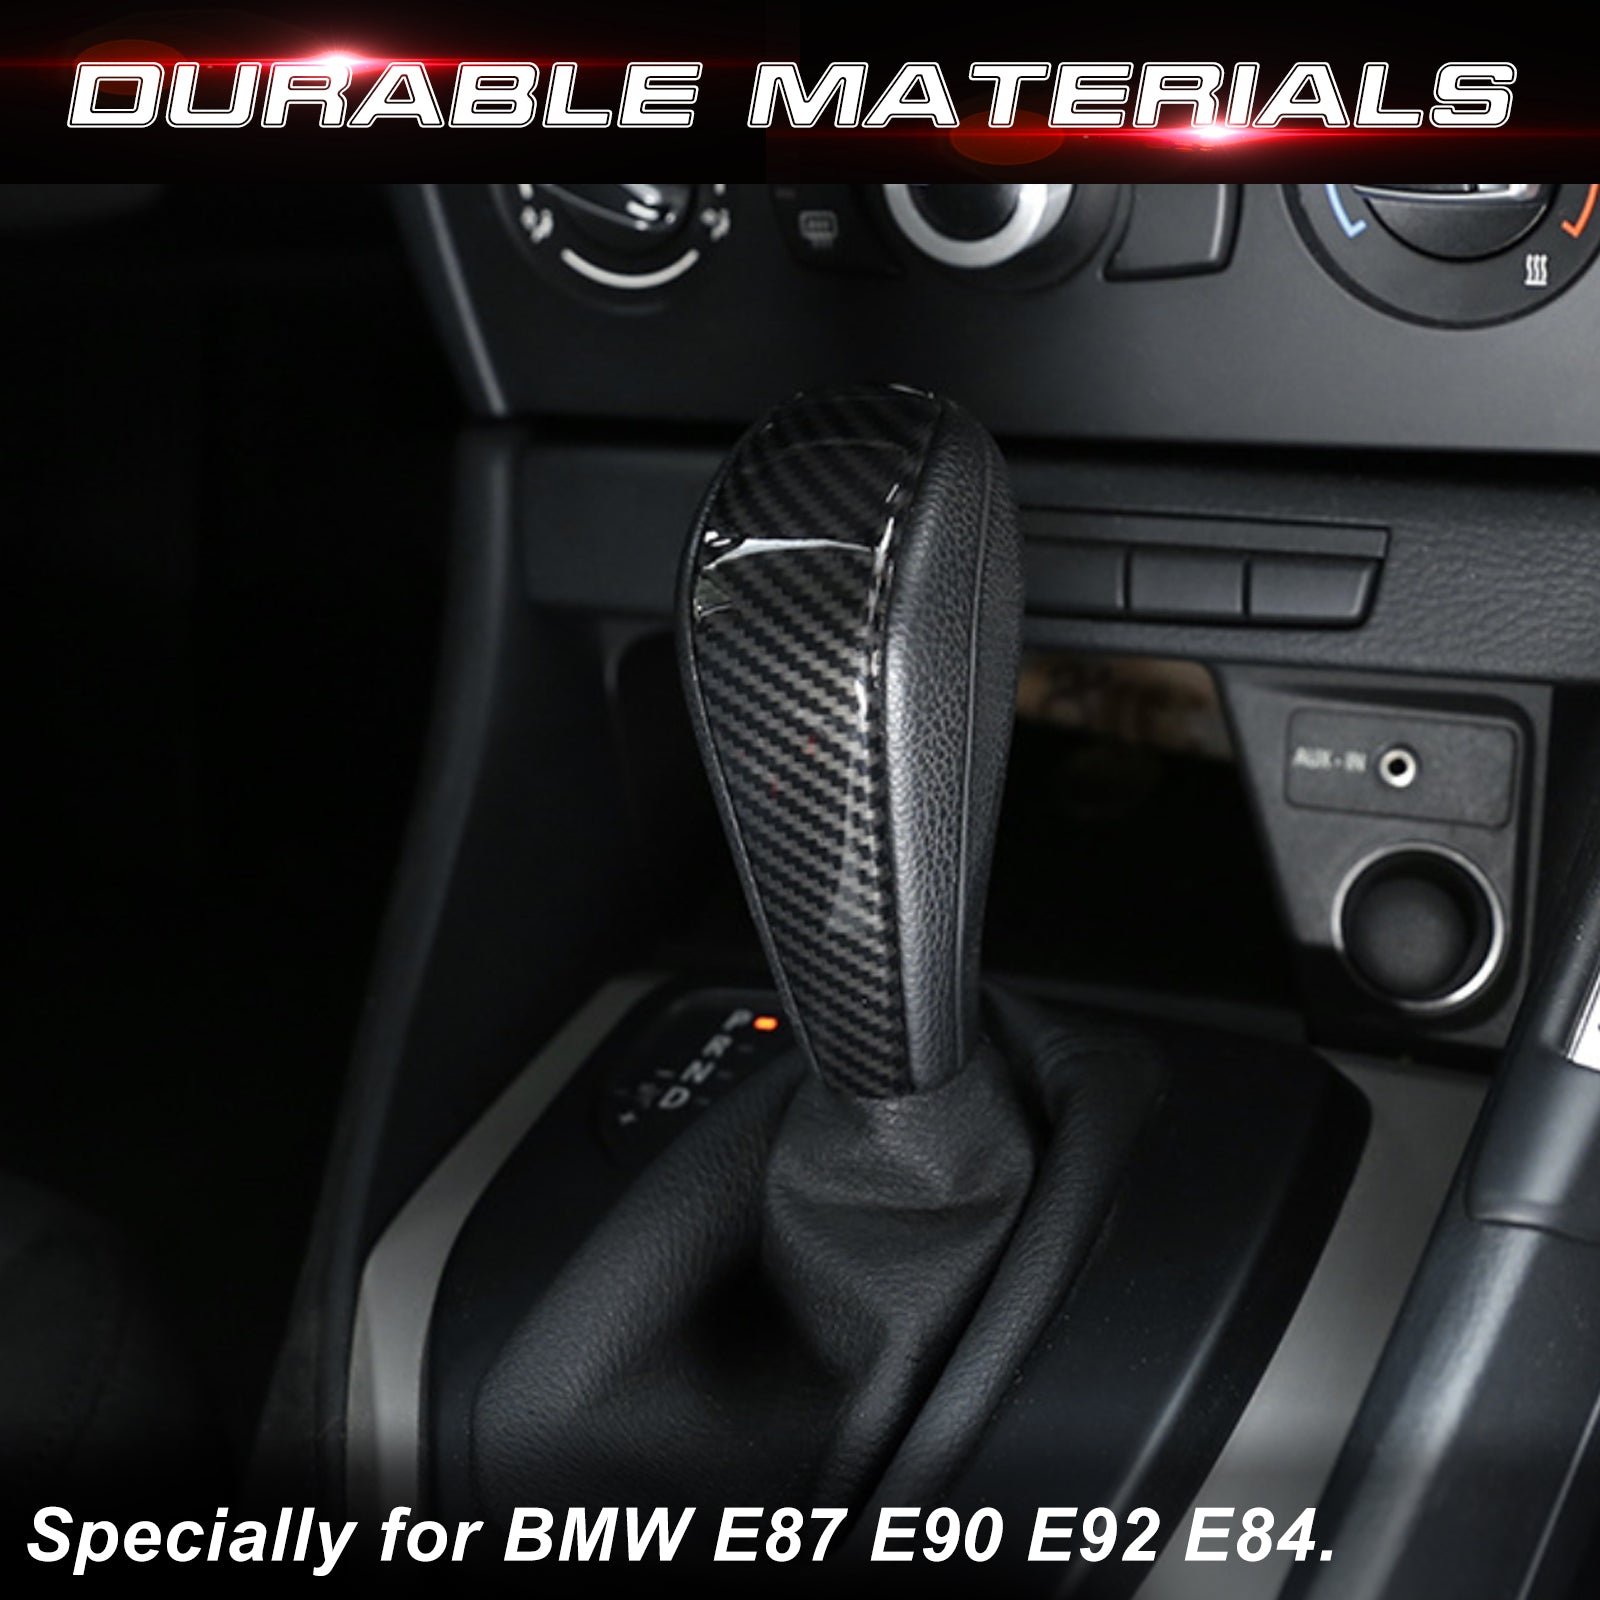 Kaufe Carbon Fiber Gear Shift Knob Head Cover Trim For BMW 3 Series E90 E92  E93